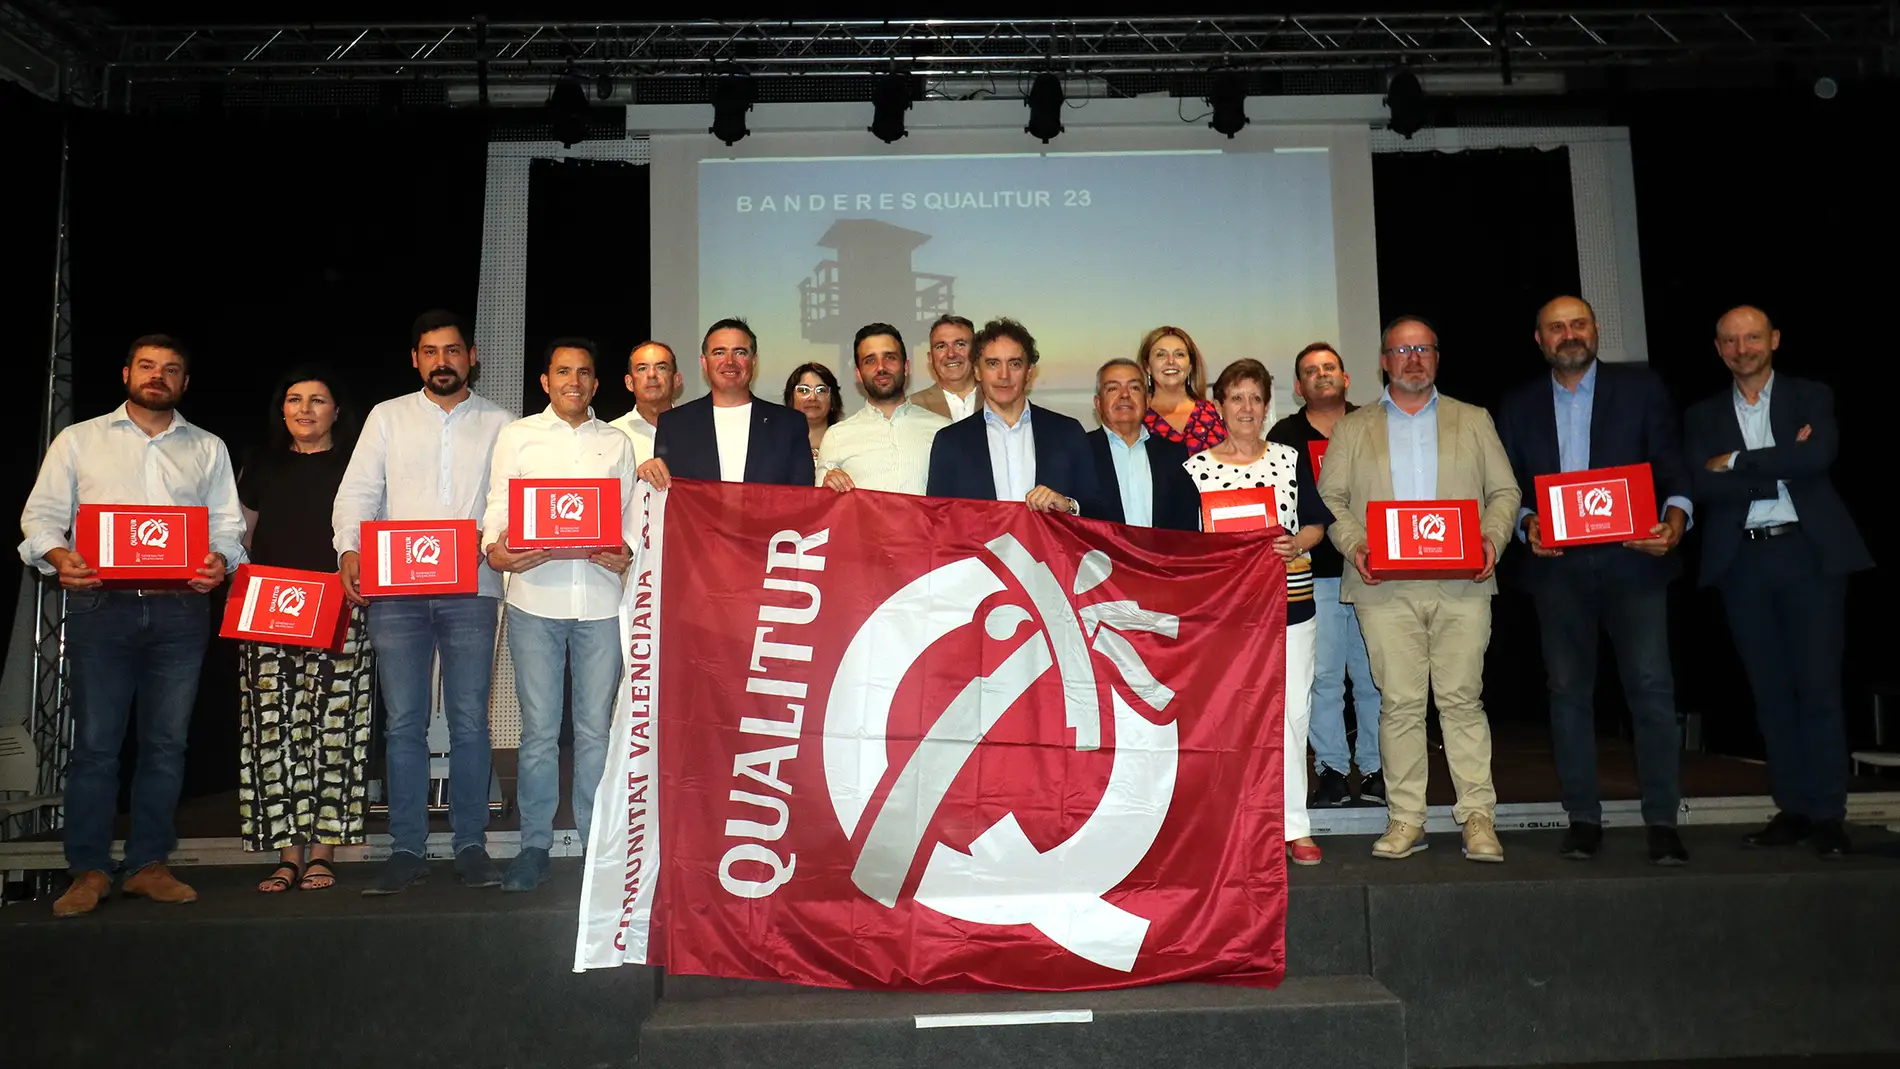 Acto de entrega de las Banderas QUALITUR, celebrado en el Casal Jove de El Puerto